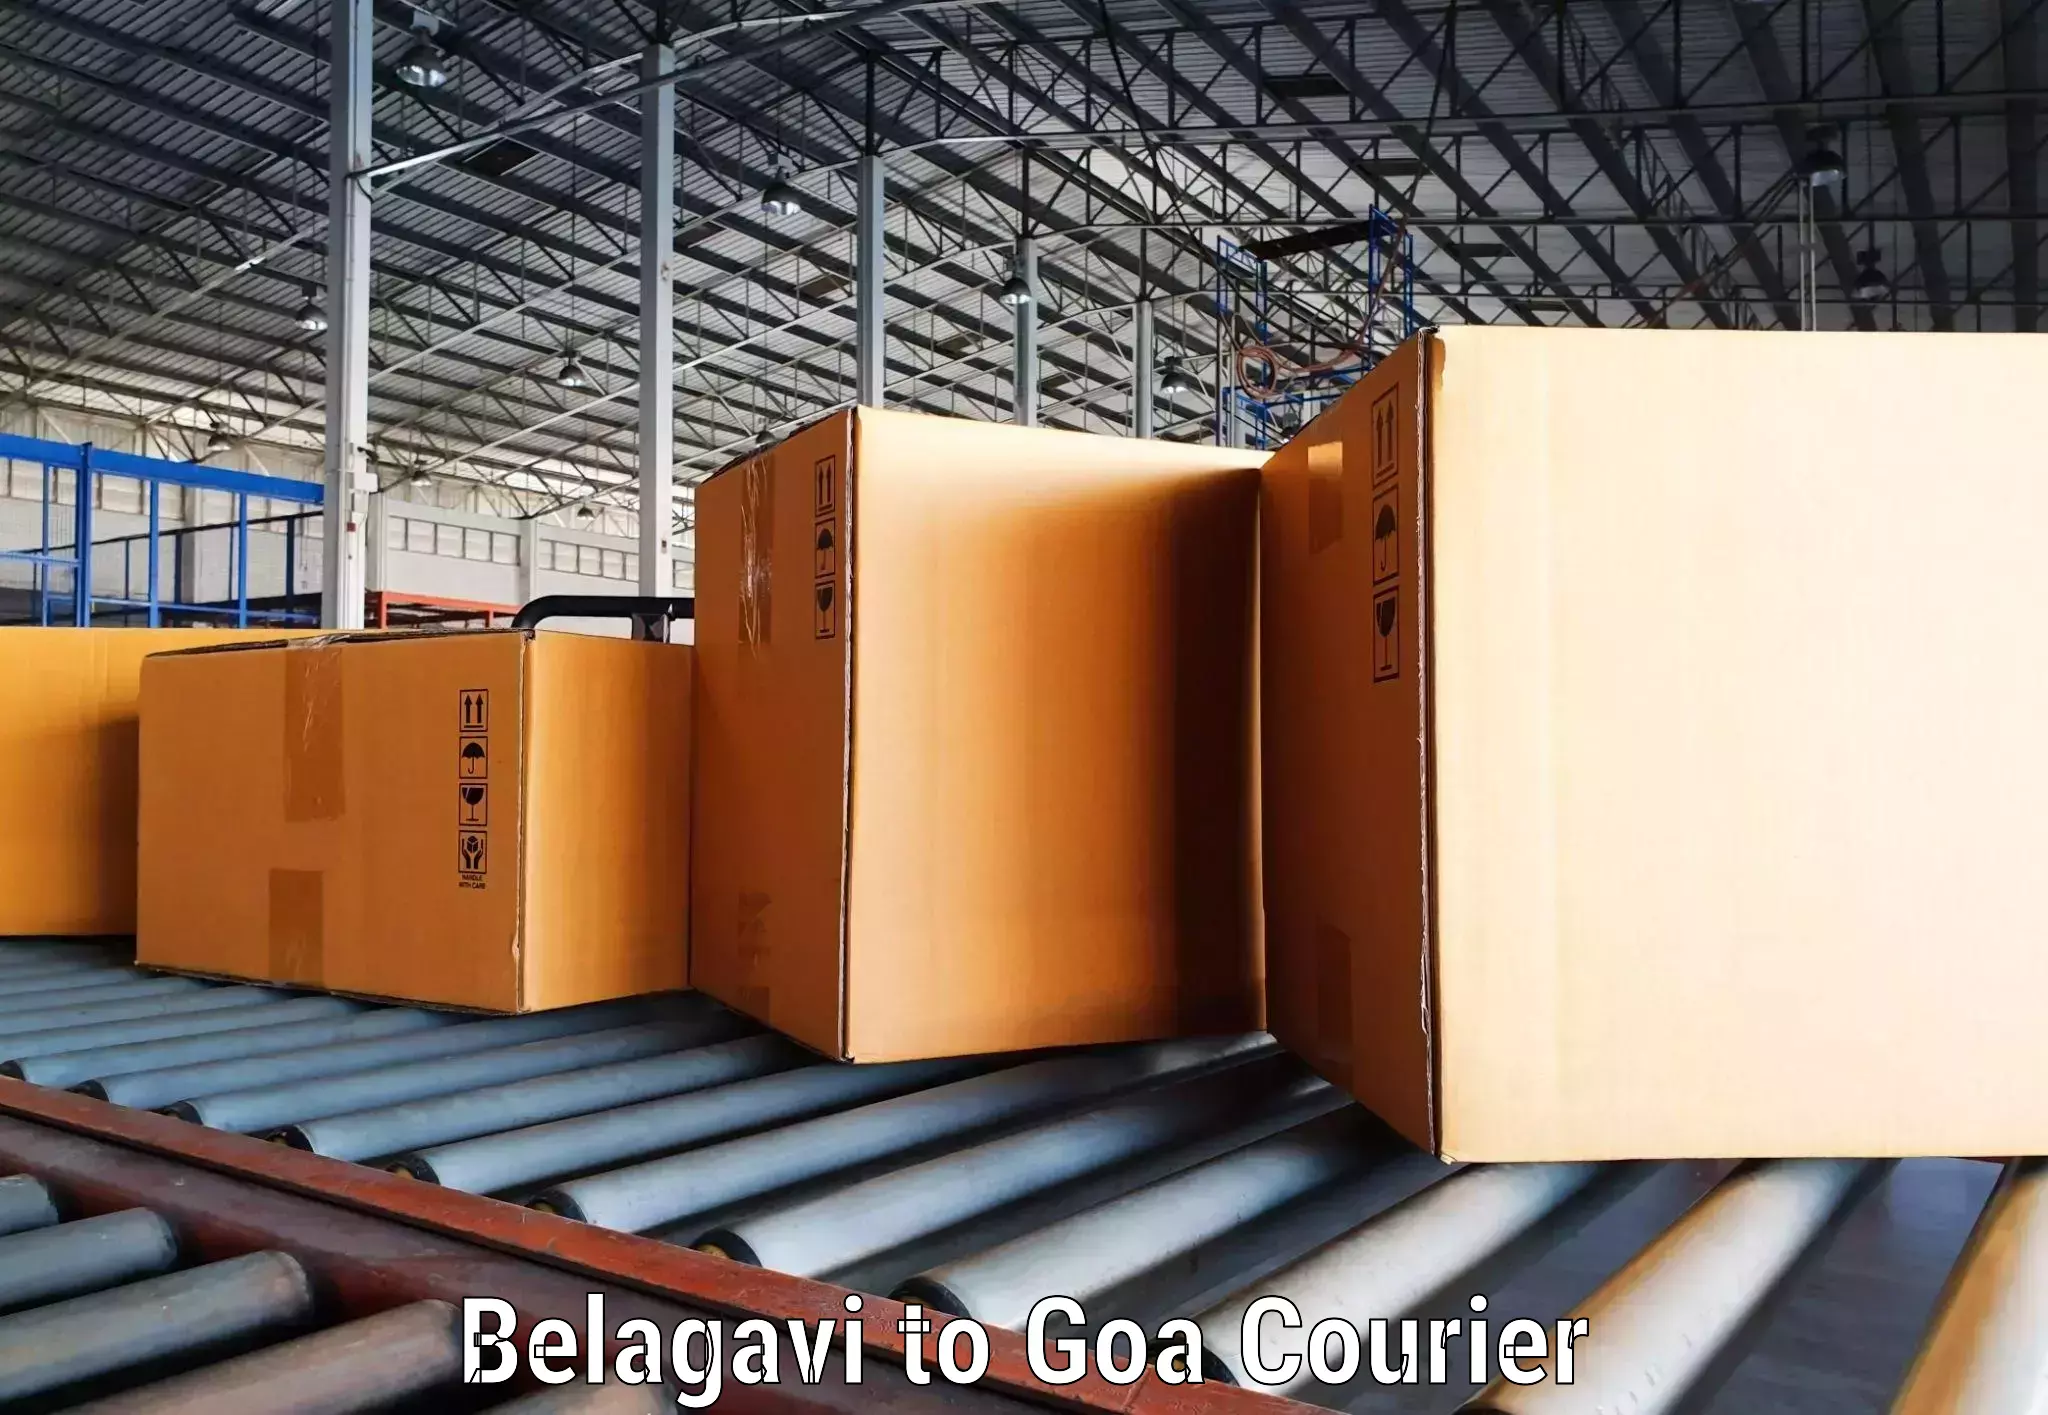 High-capacity courier solutions Belagavi to Vasco da Gama